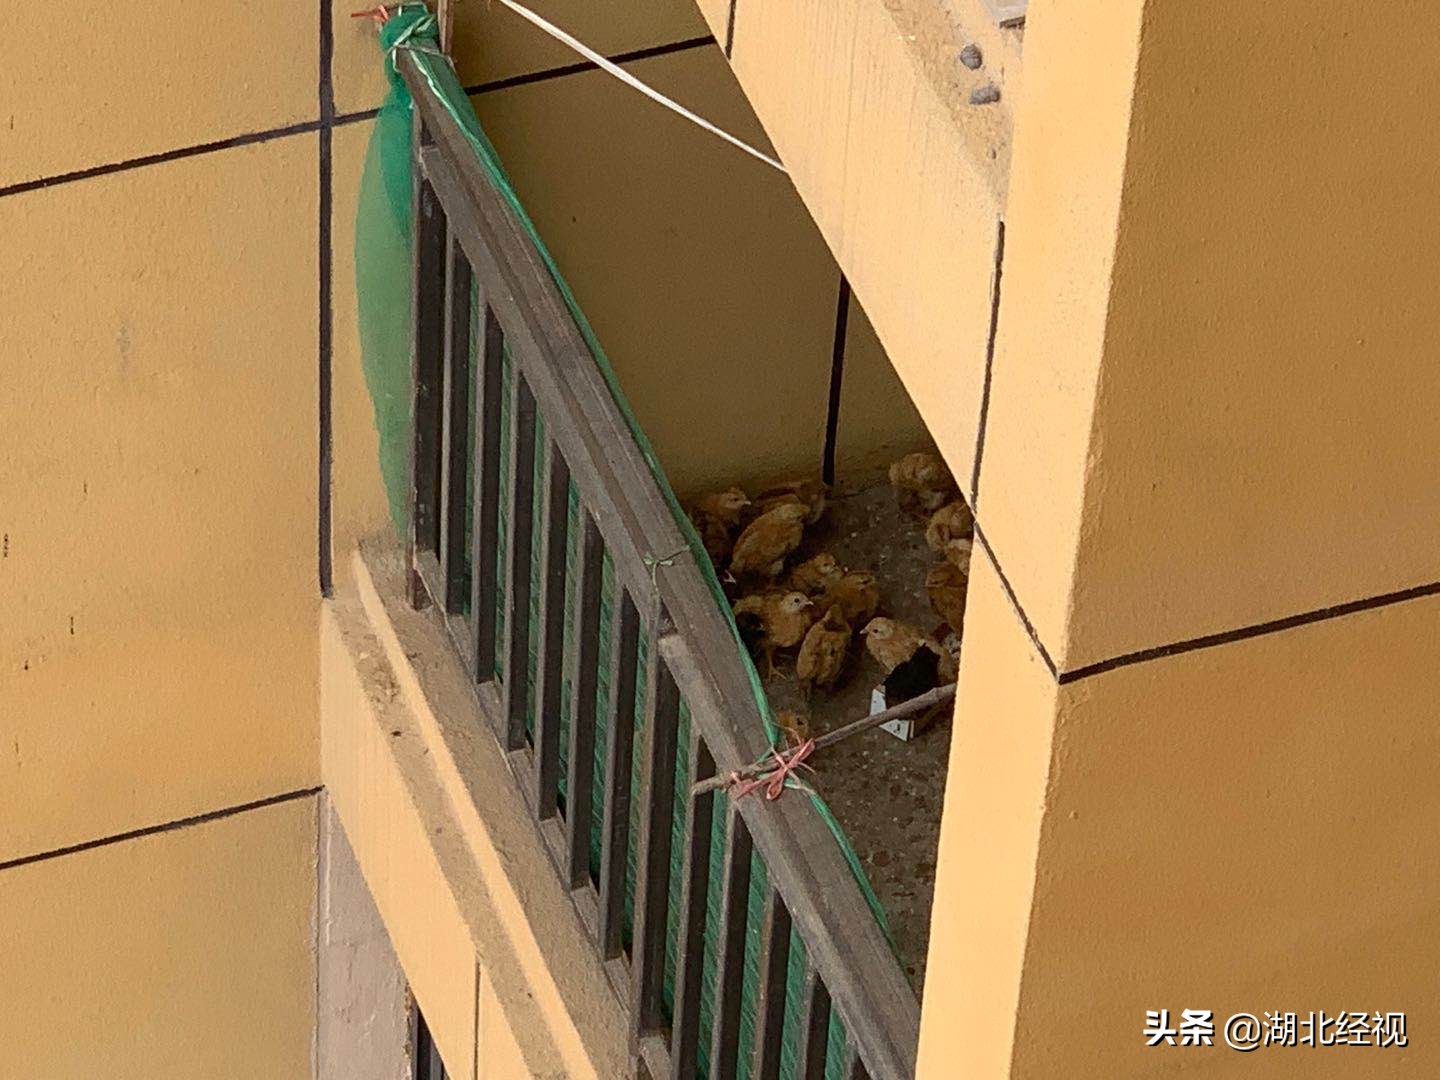 居民19楼高层家中养上百只鸡，邻居熏得受不了